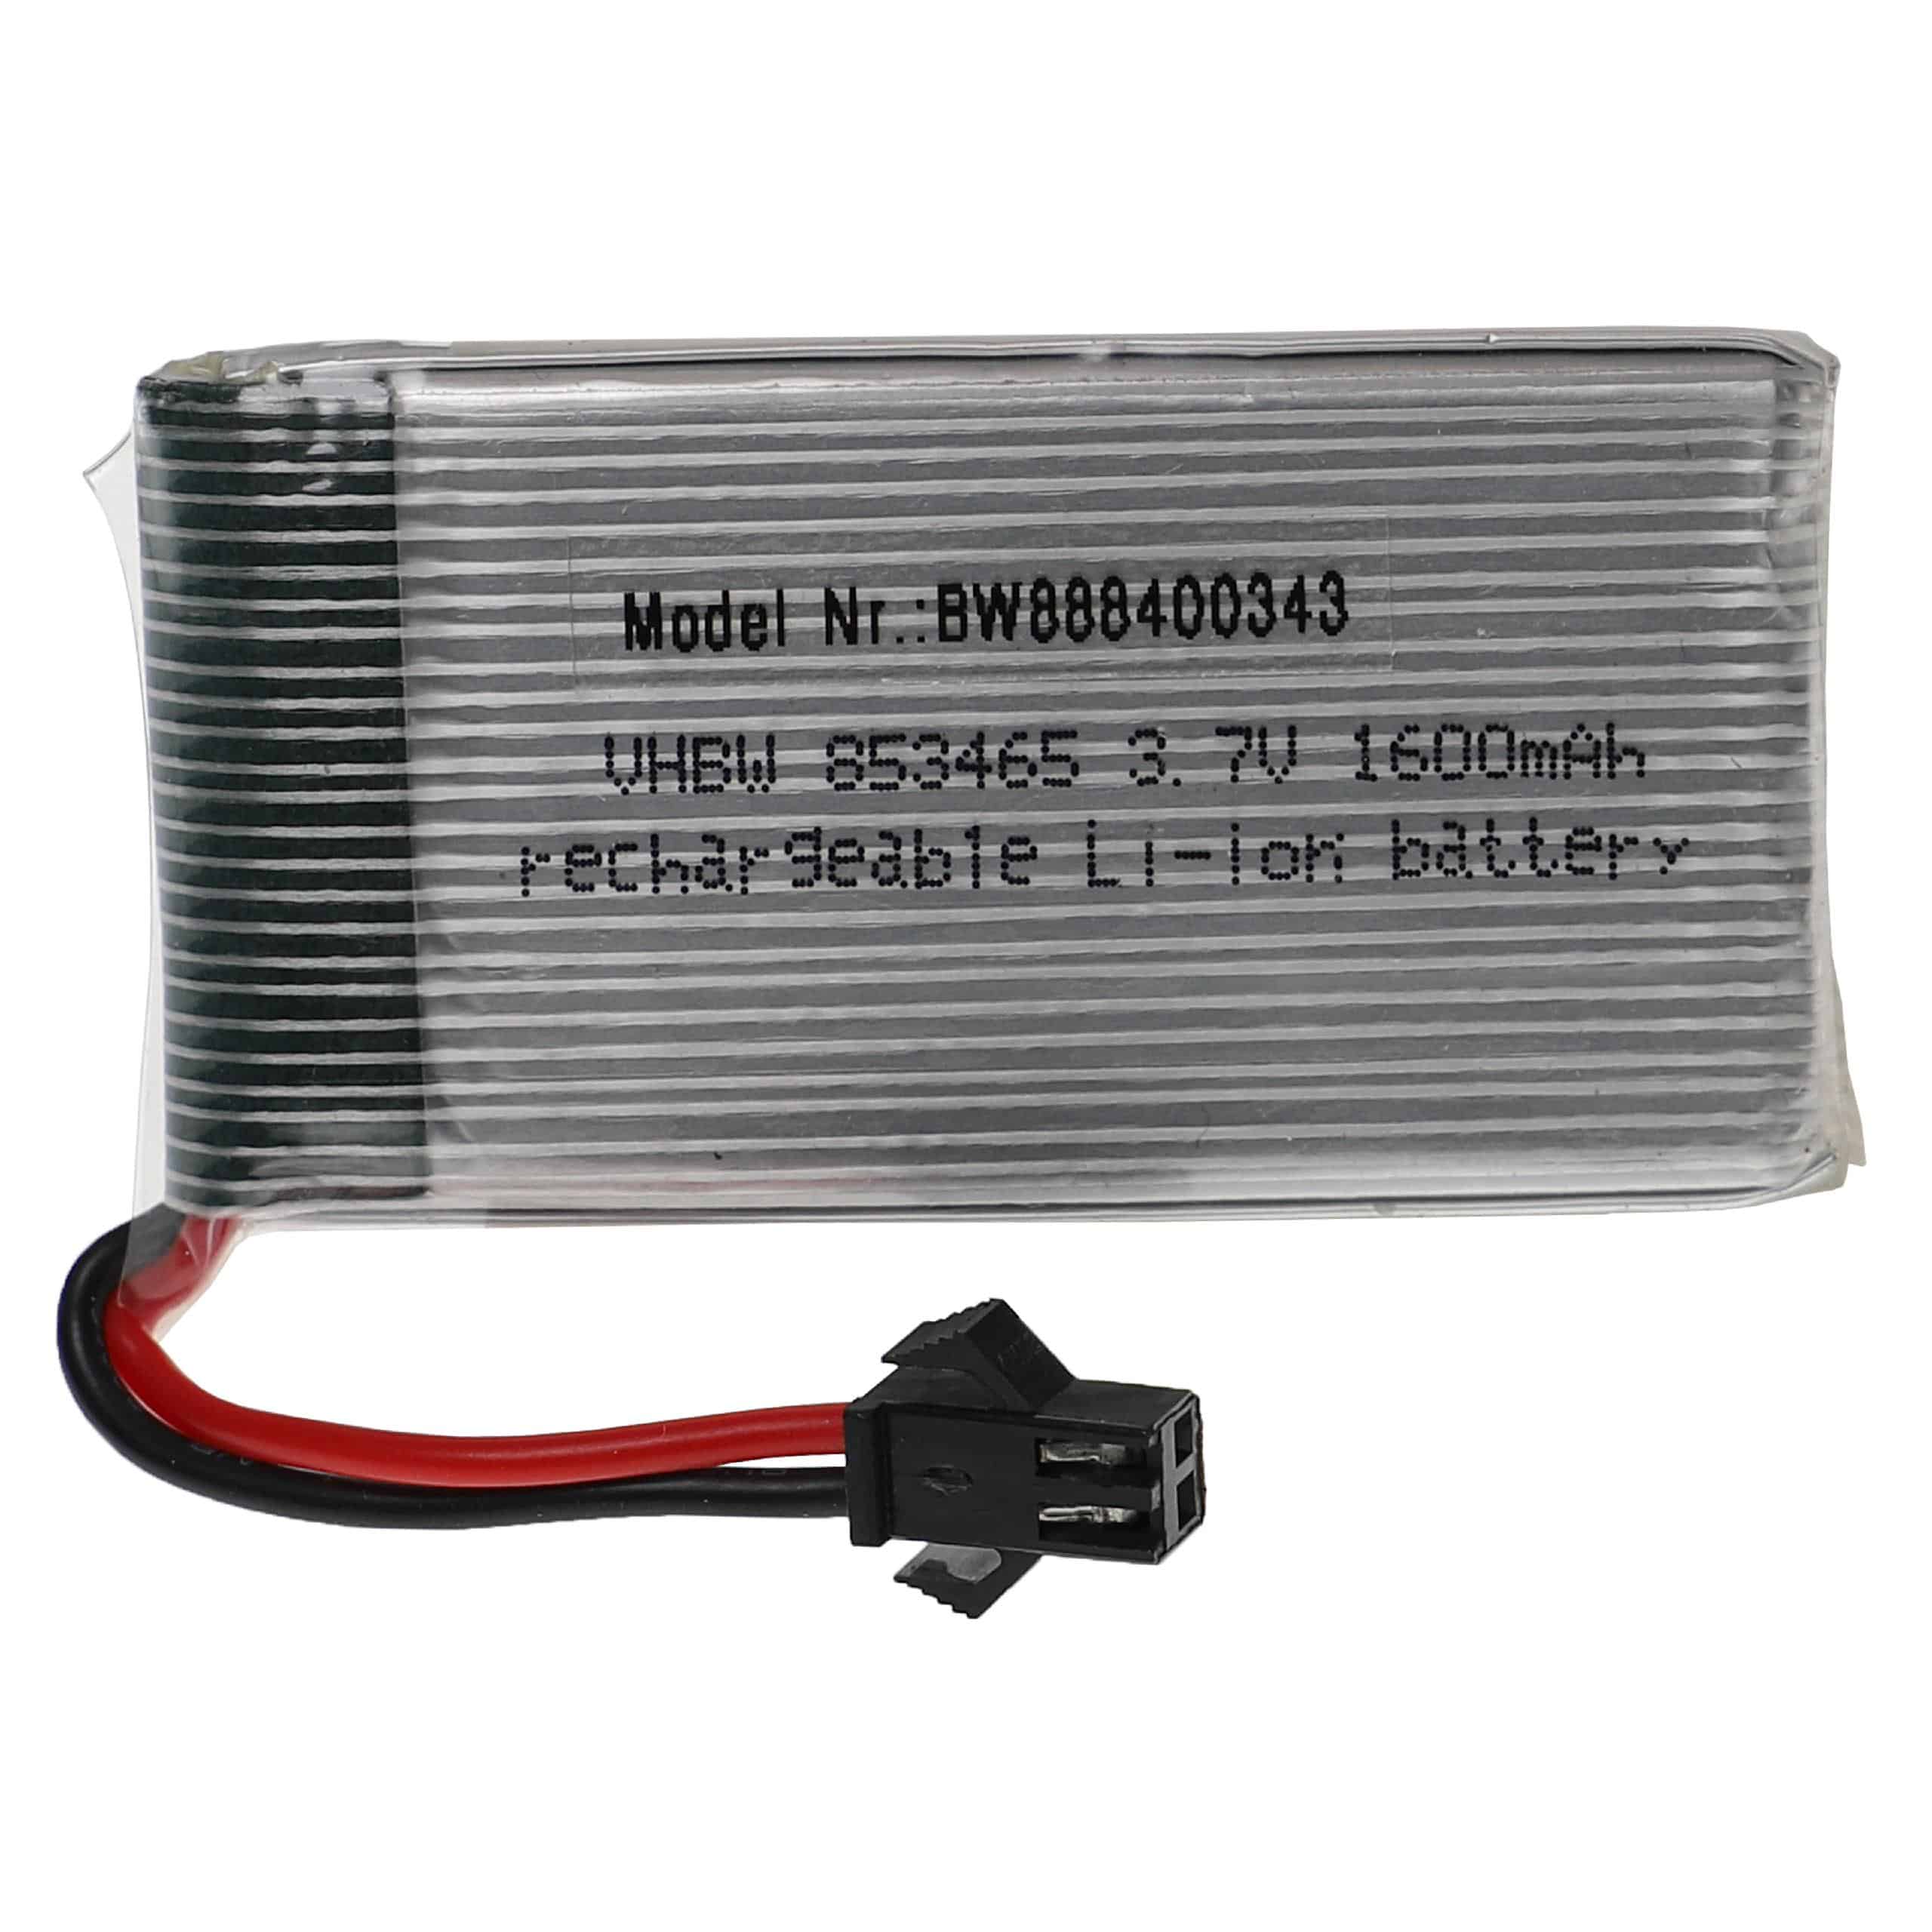 Akumulator do modeli zdalnie sterowanych RC - 1600 mAh 3,7 V LiPo, SM-2P